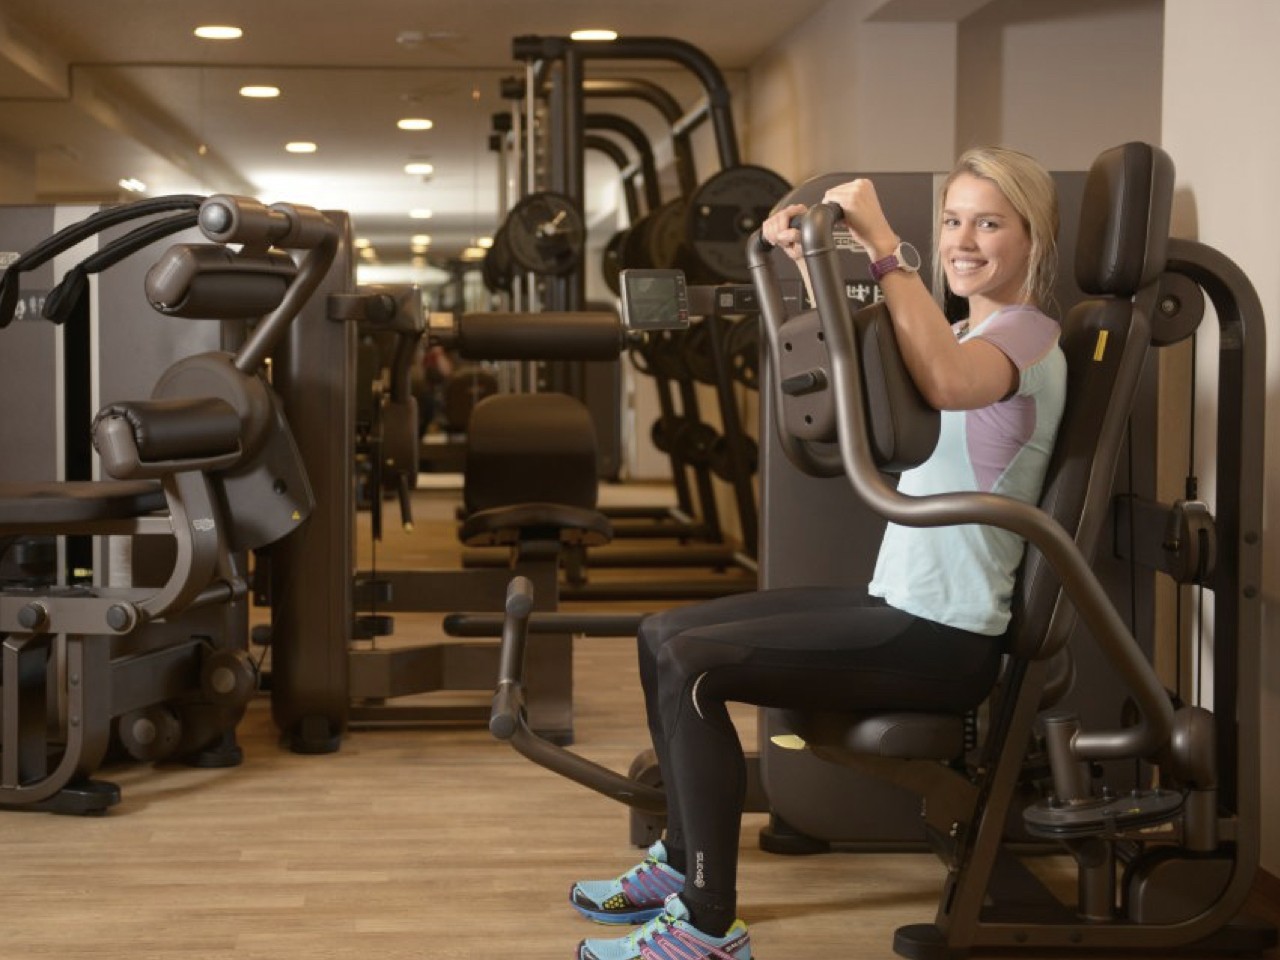 Eine Frau trainiert im Sommer an einem Gerät in einem Fitnessstudio.